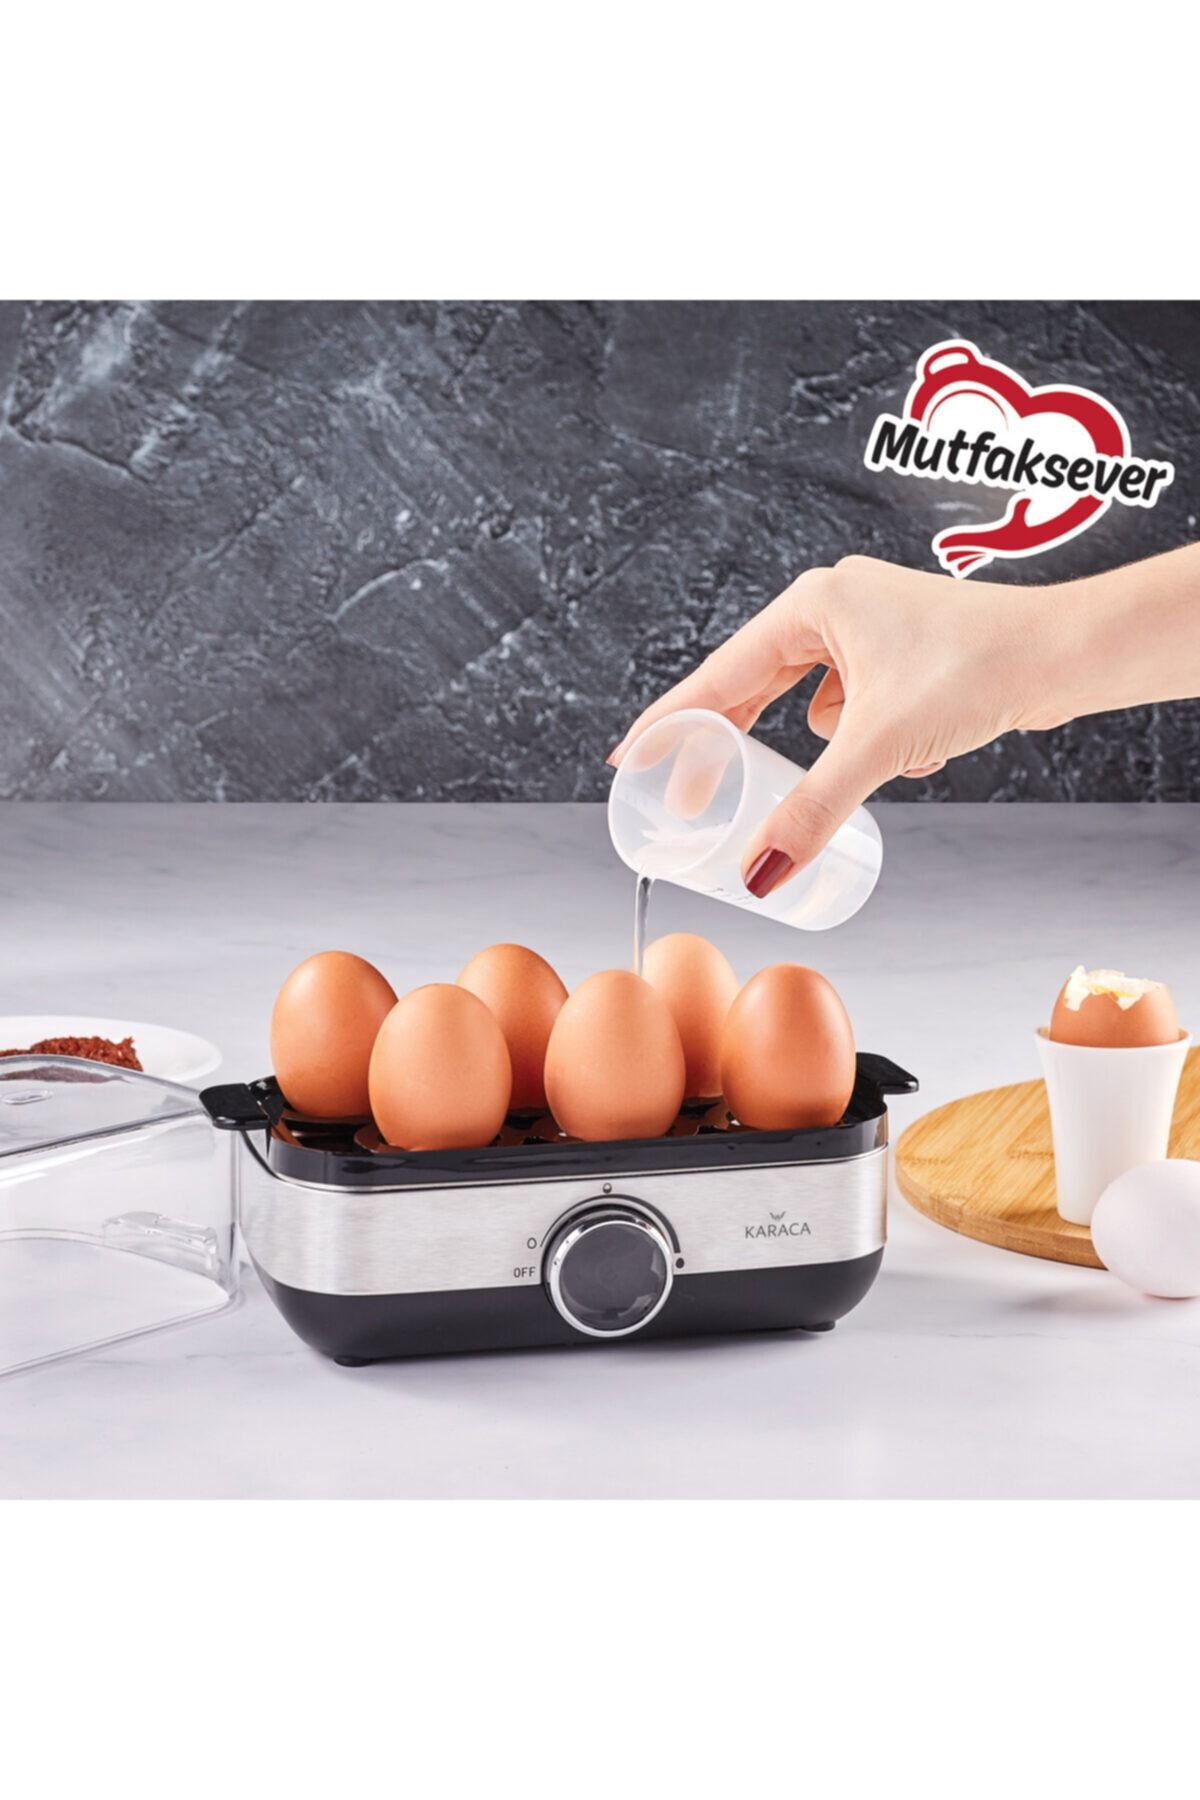 Karaca Inox Mutfaksever Yumurta Haşlama Makinesi